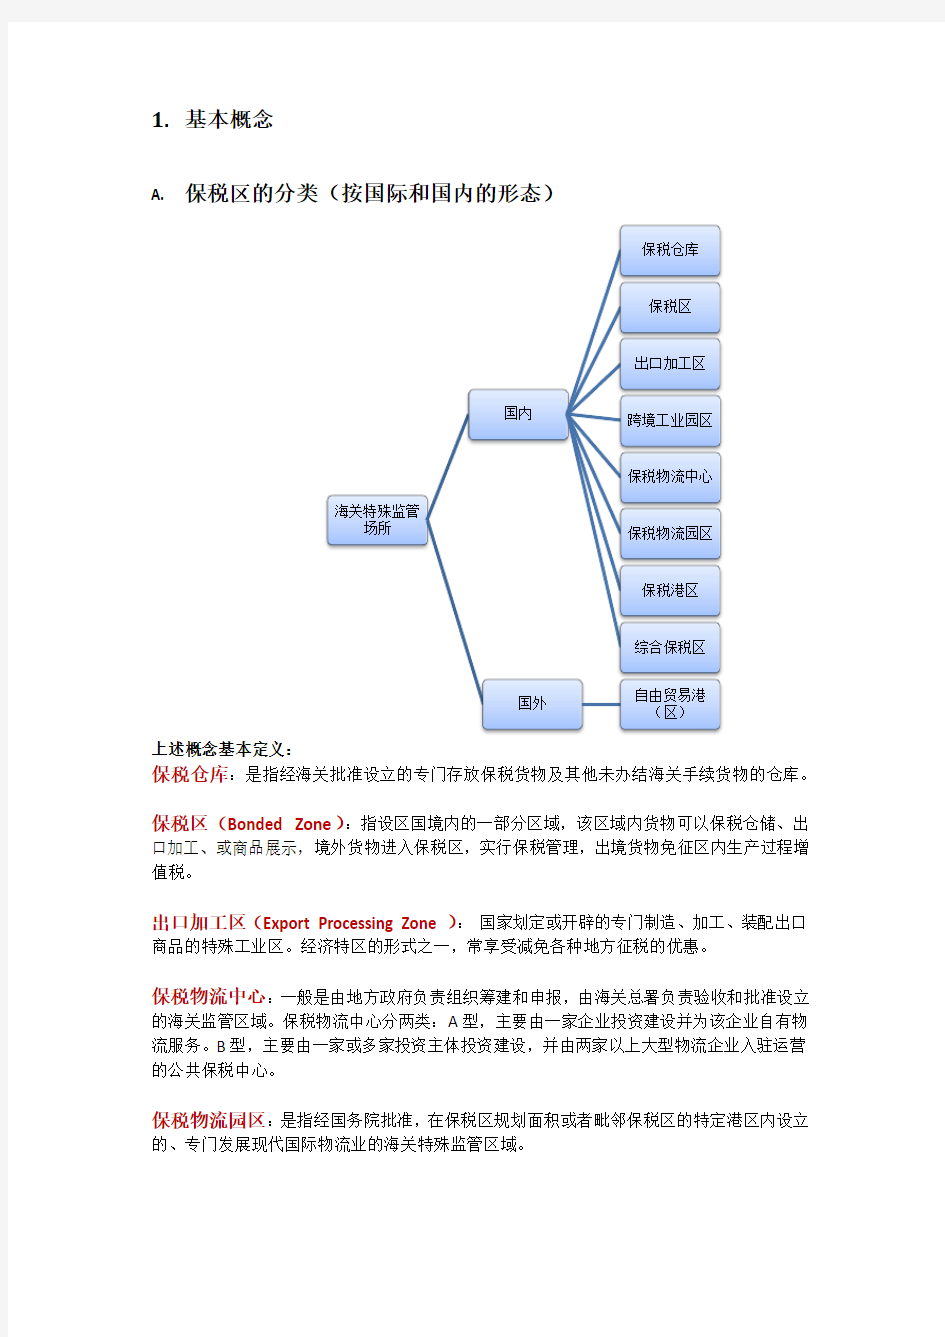 上海自由贸易试验区课题研究_070313